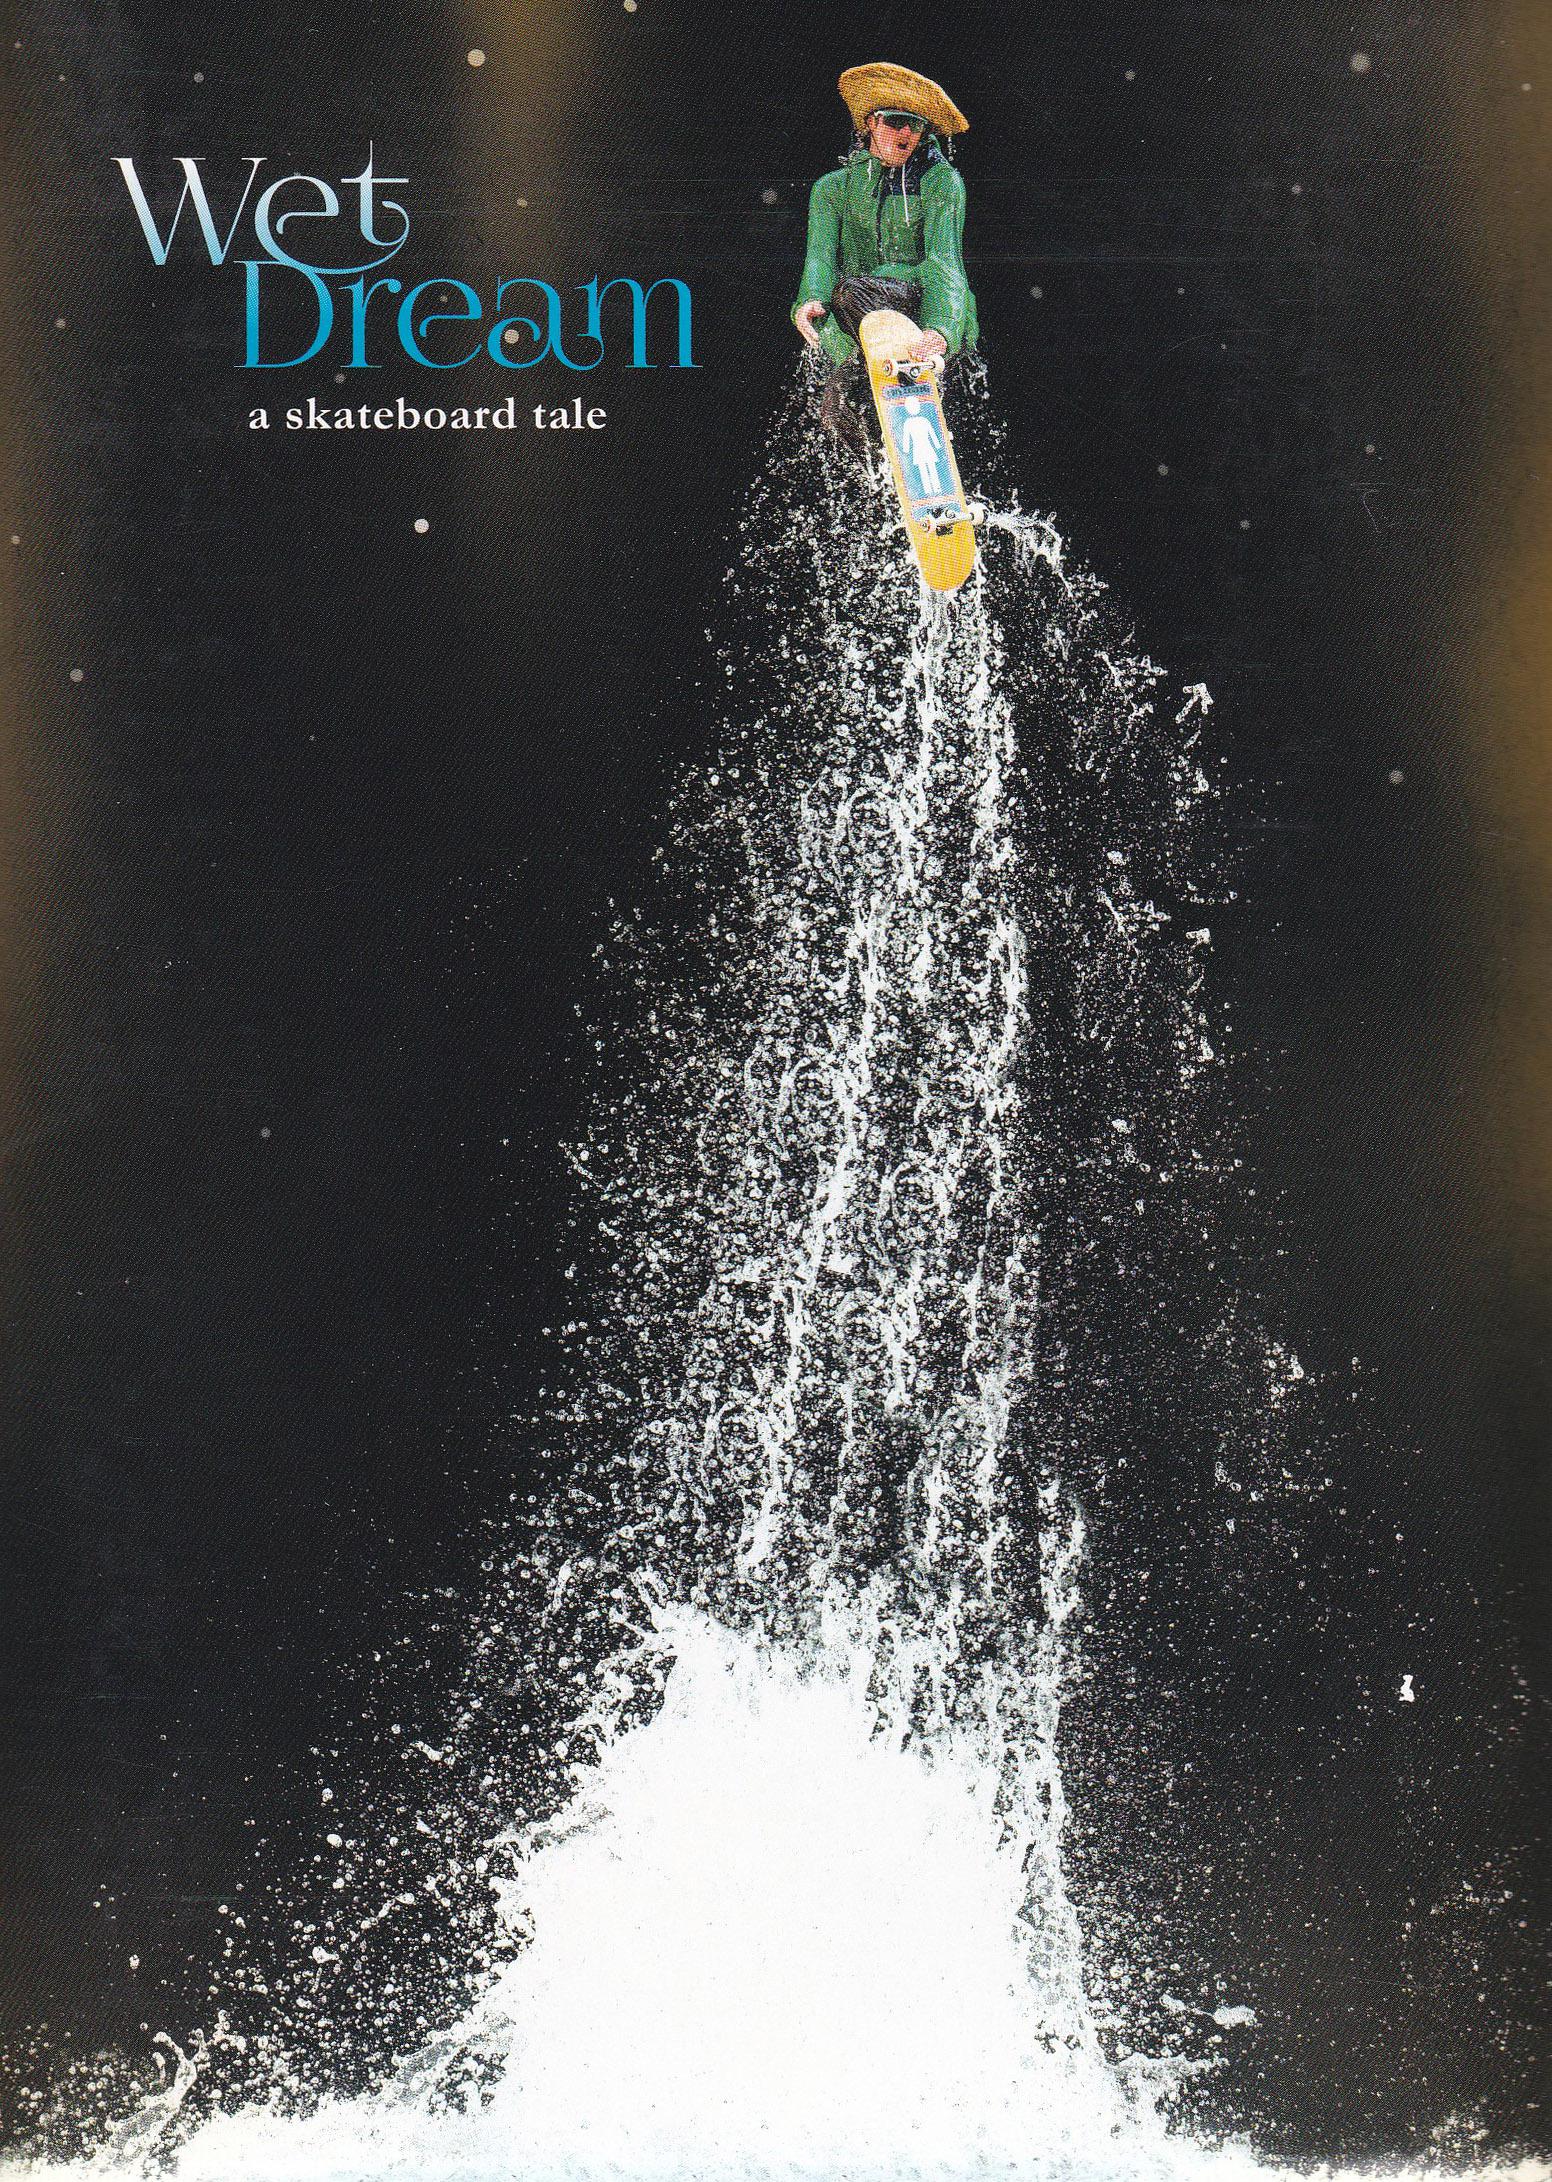 Girl - Wet Dream cover art